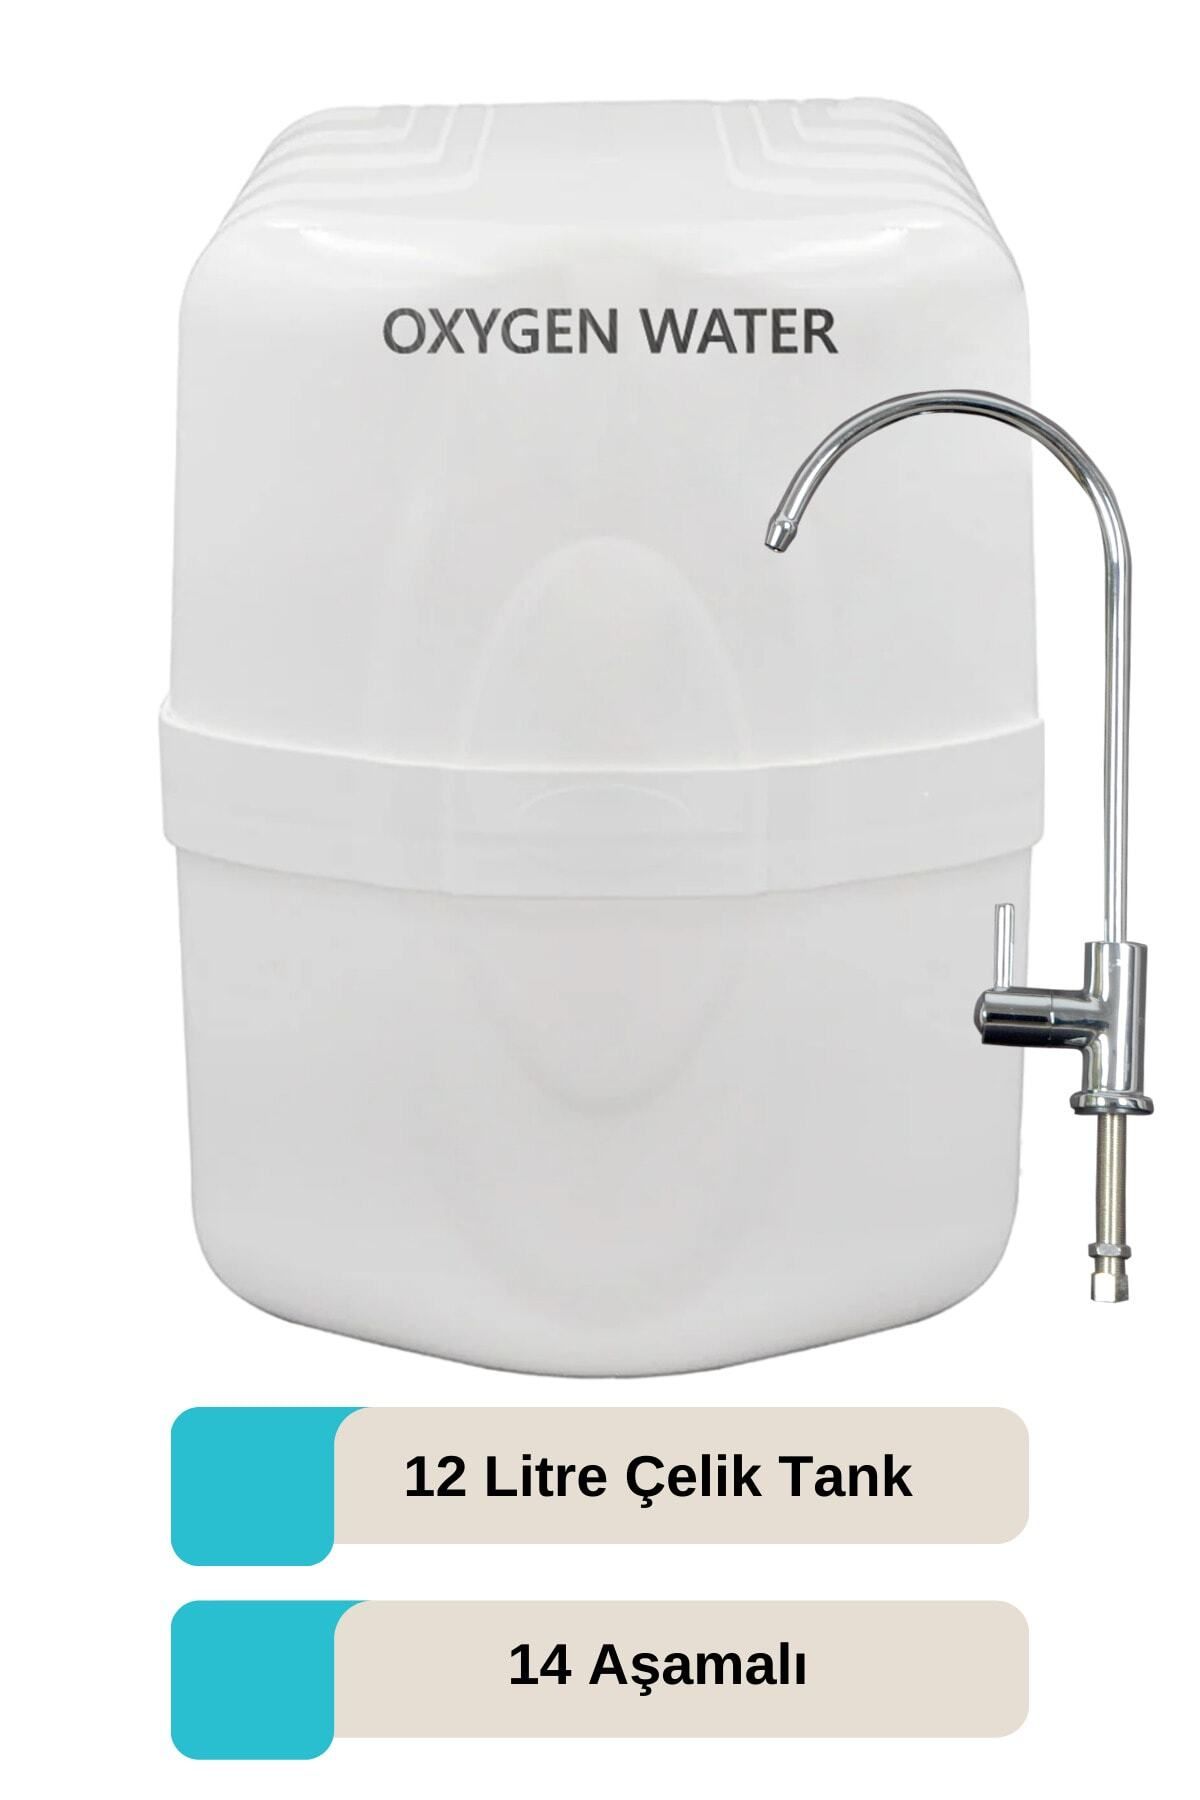 OXYGEN WATER 12 lt Çelik Tanklı 14 Aşamalı Alkali Mineral Filtreli Su Arıtma Cihazı